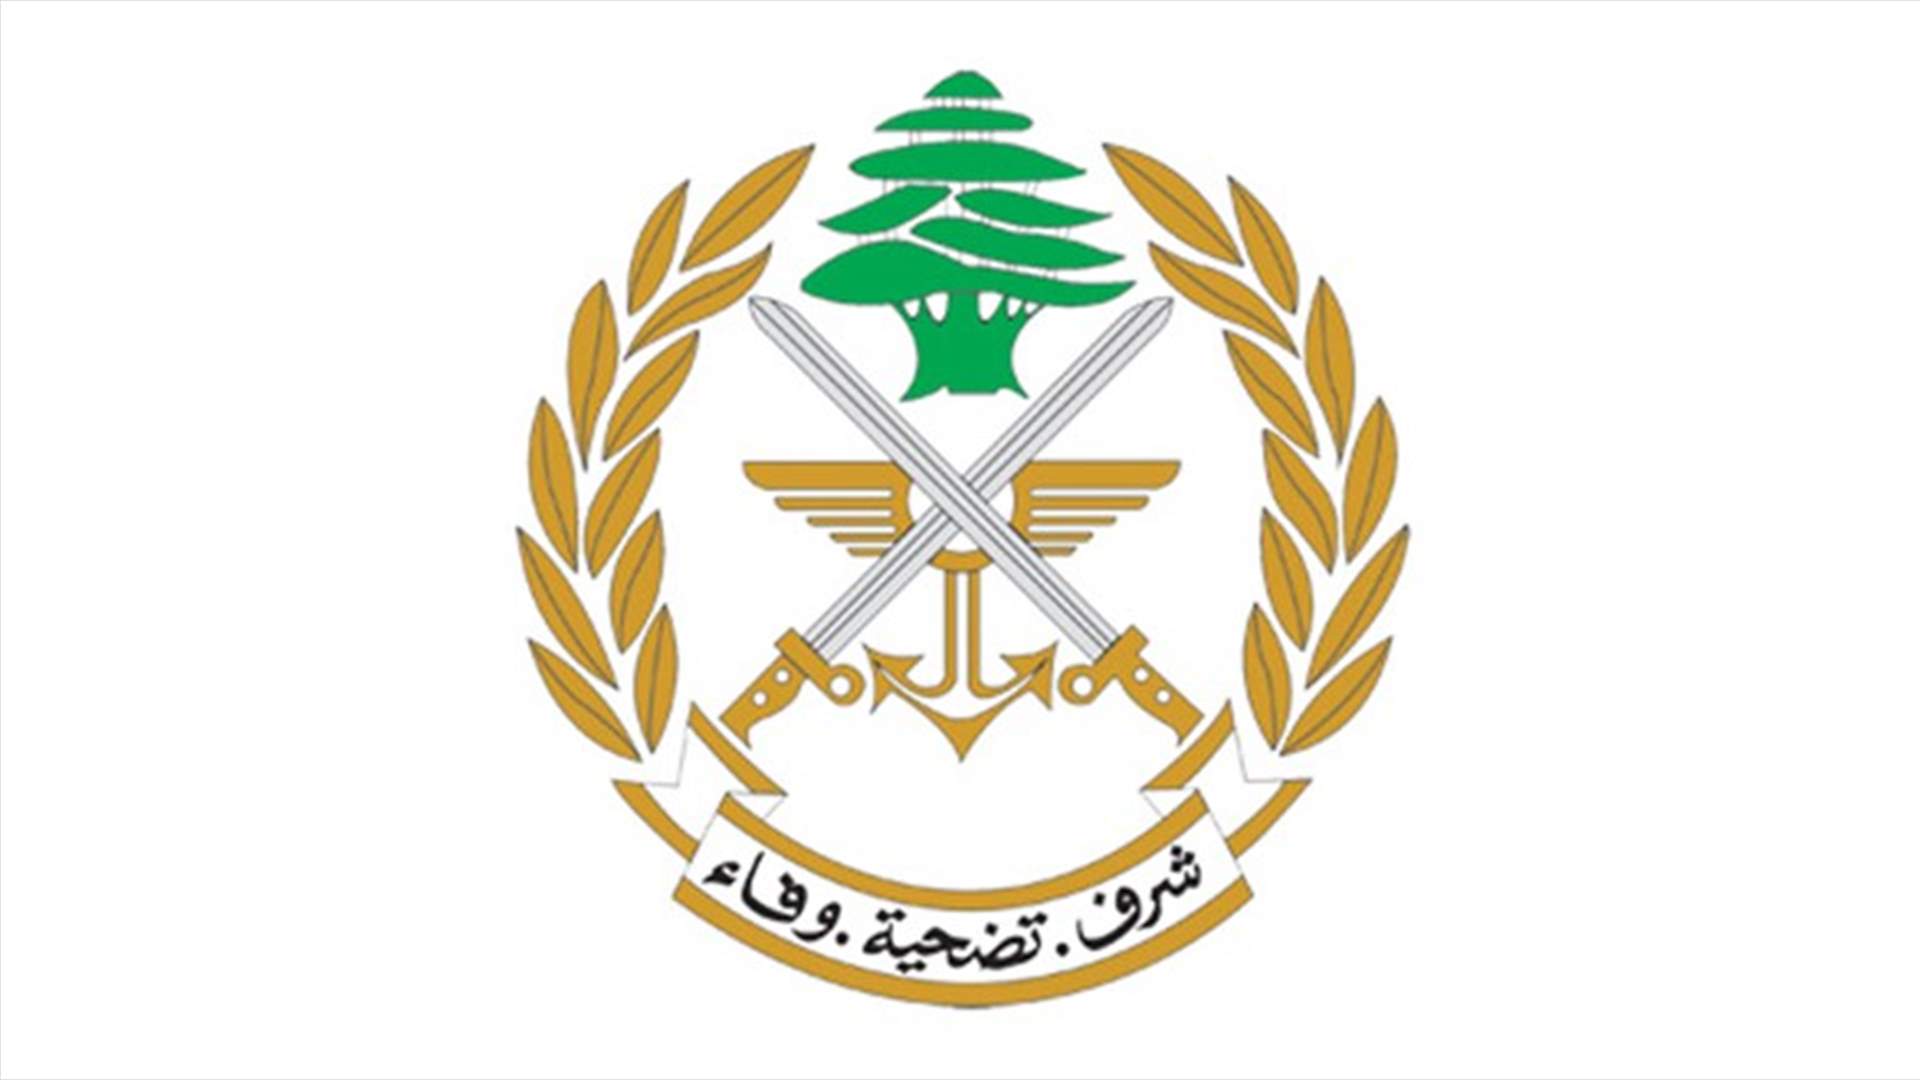 الجيش ينفي ما يتم تداوله عن جريمة قتل في بيروت